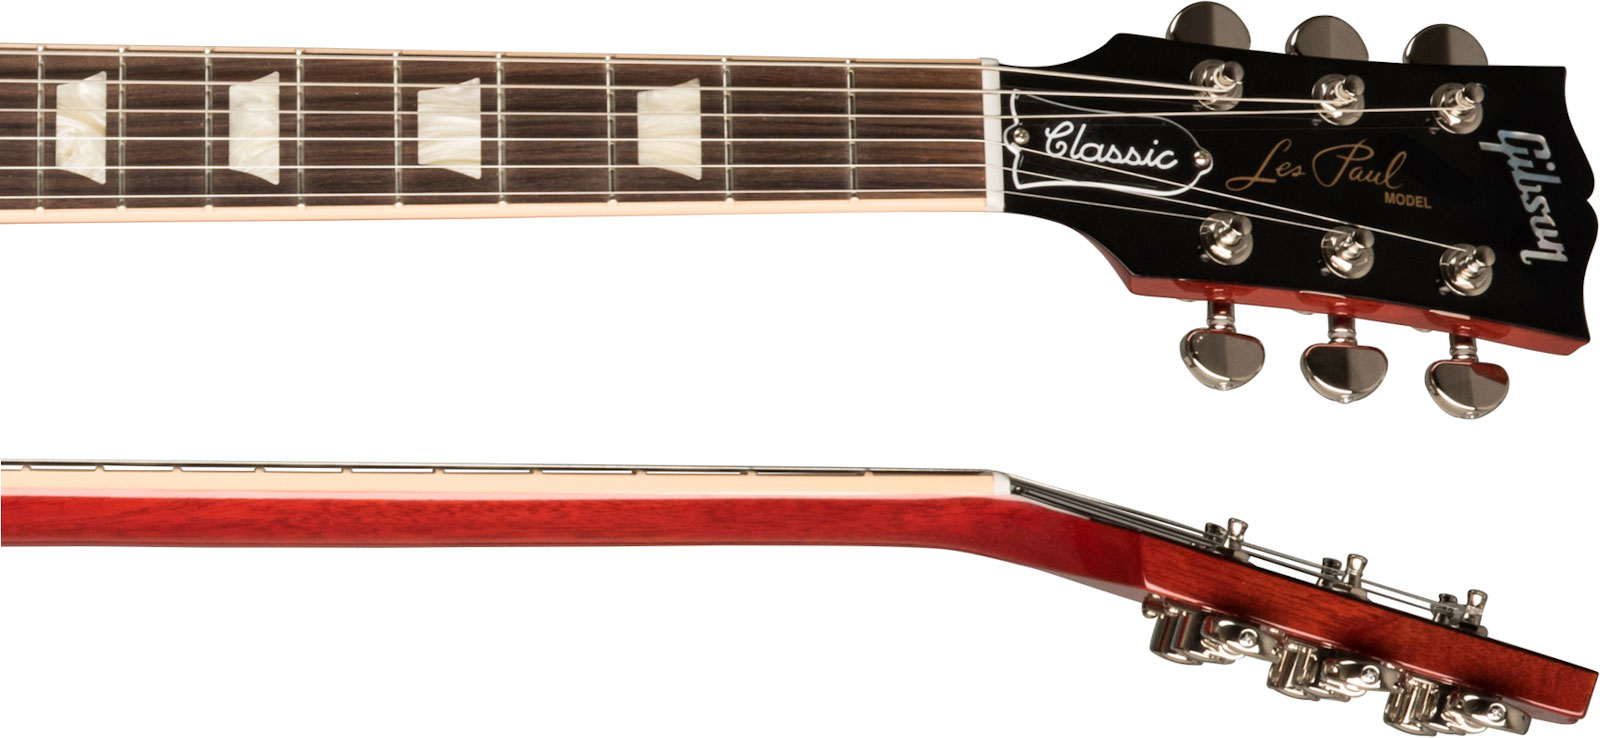 Gibson Les Paul Classic Modern 2h Ht Rw - Trans Cherry - Guitare Électrique Single Cut - Variation 3